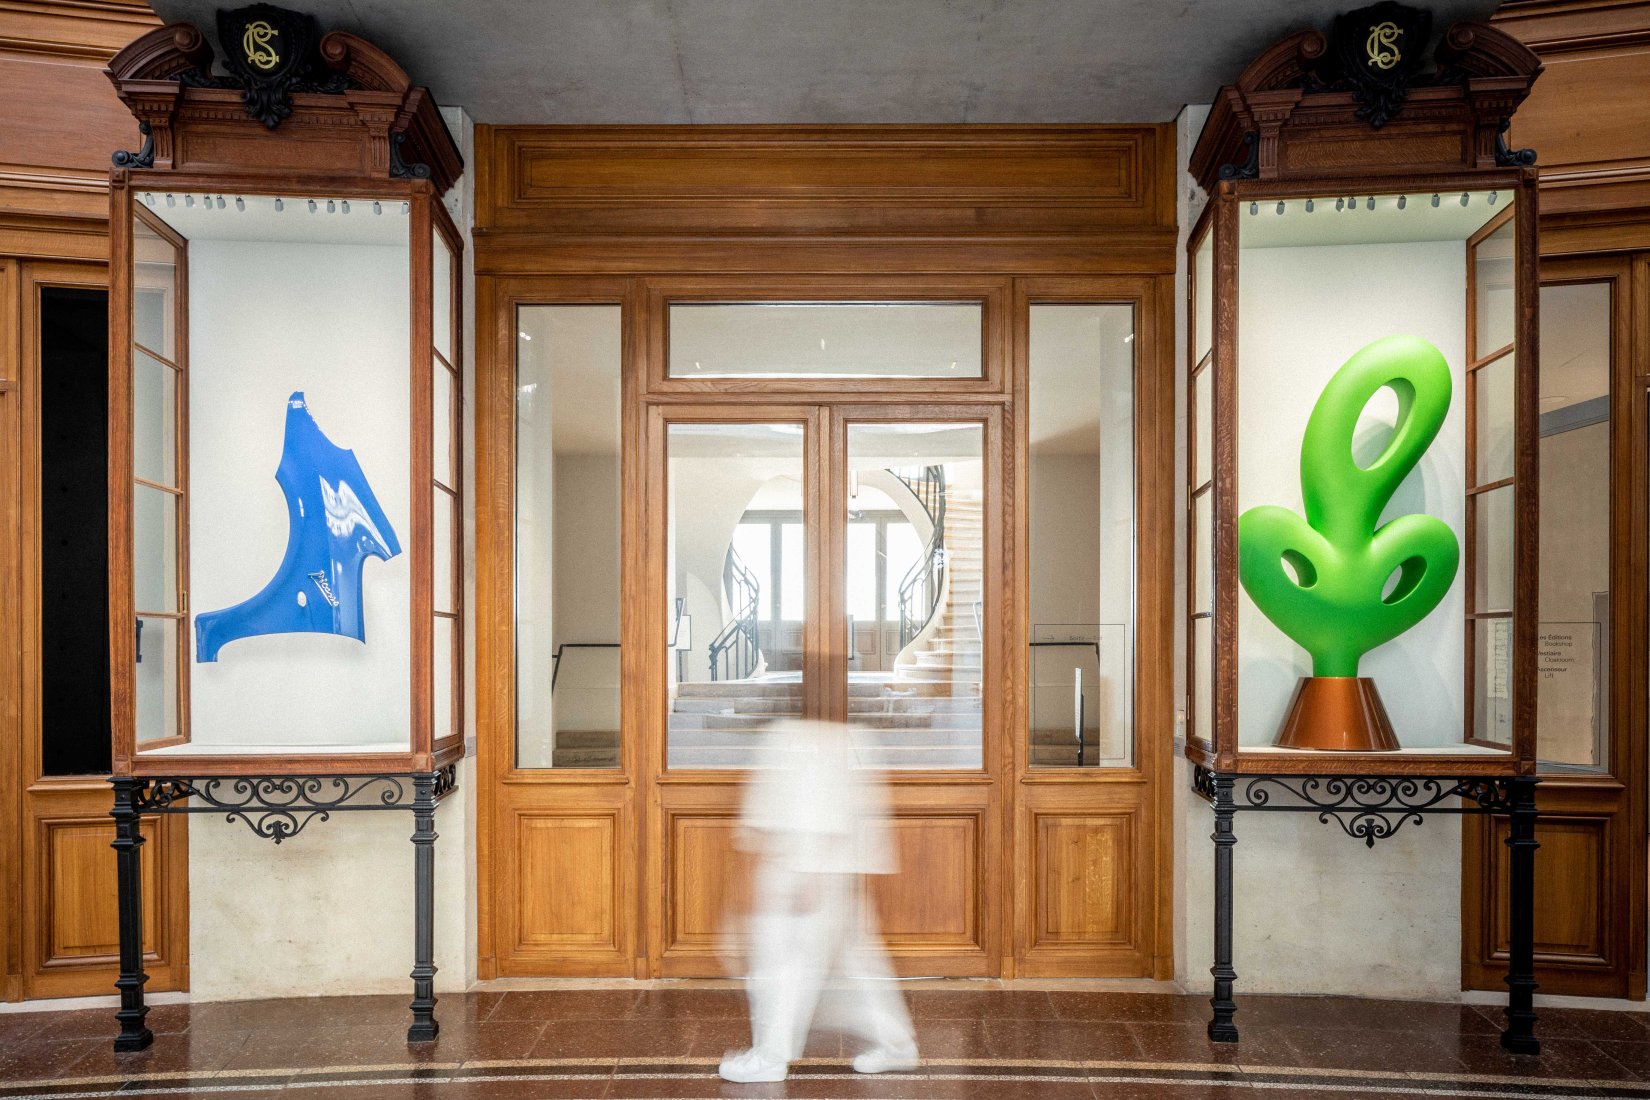 Bertrand Lavier, Walt Disney Productions n° 6, 2018. © Bertrand Lavier / ADAGP, Paris 2021, agence Pierre-Antoine Gatier. Courtesy de l'artiste et kamel mennour. Photo Aurélien Mole